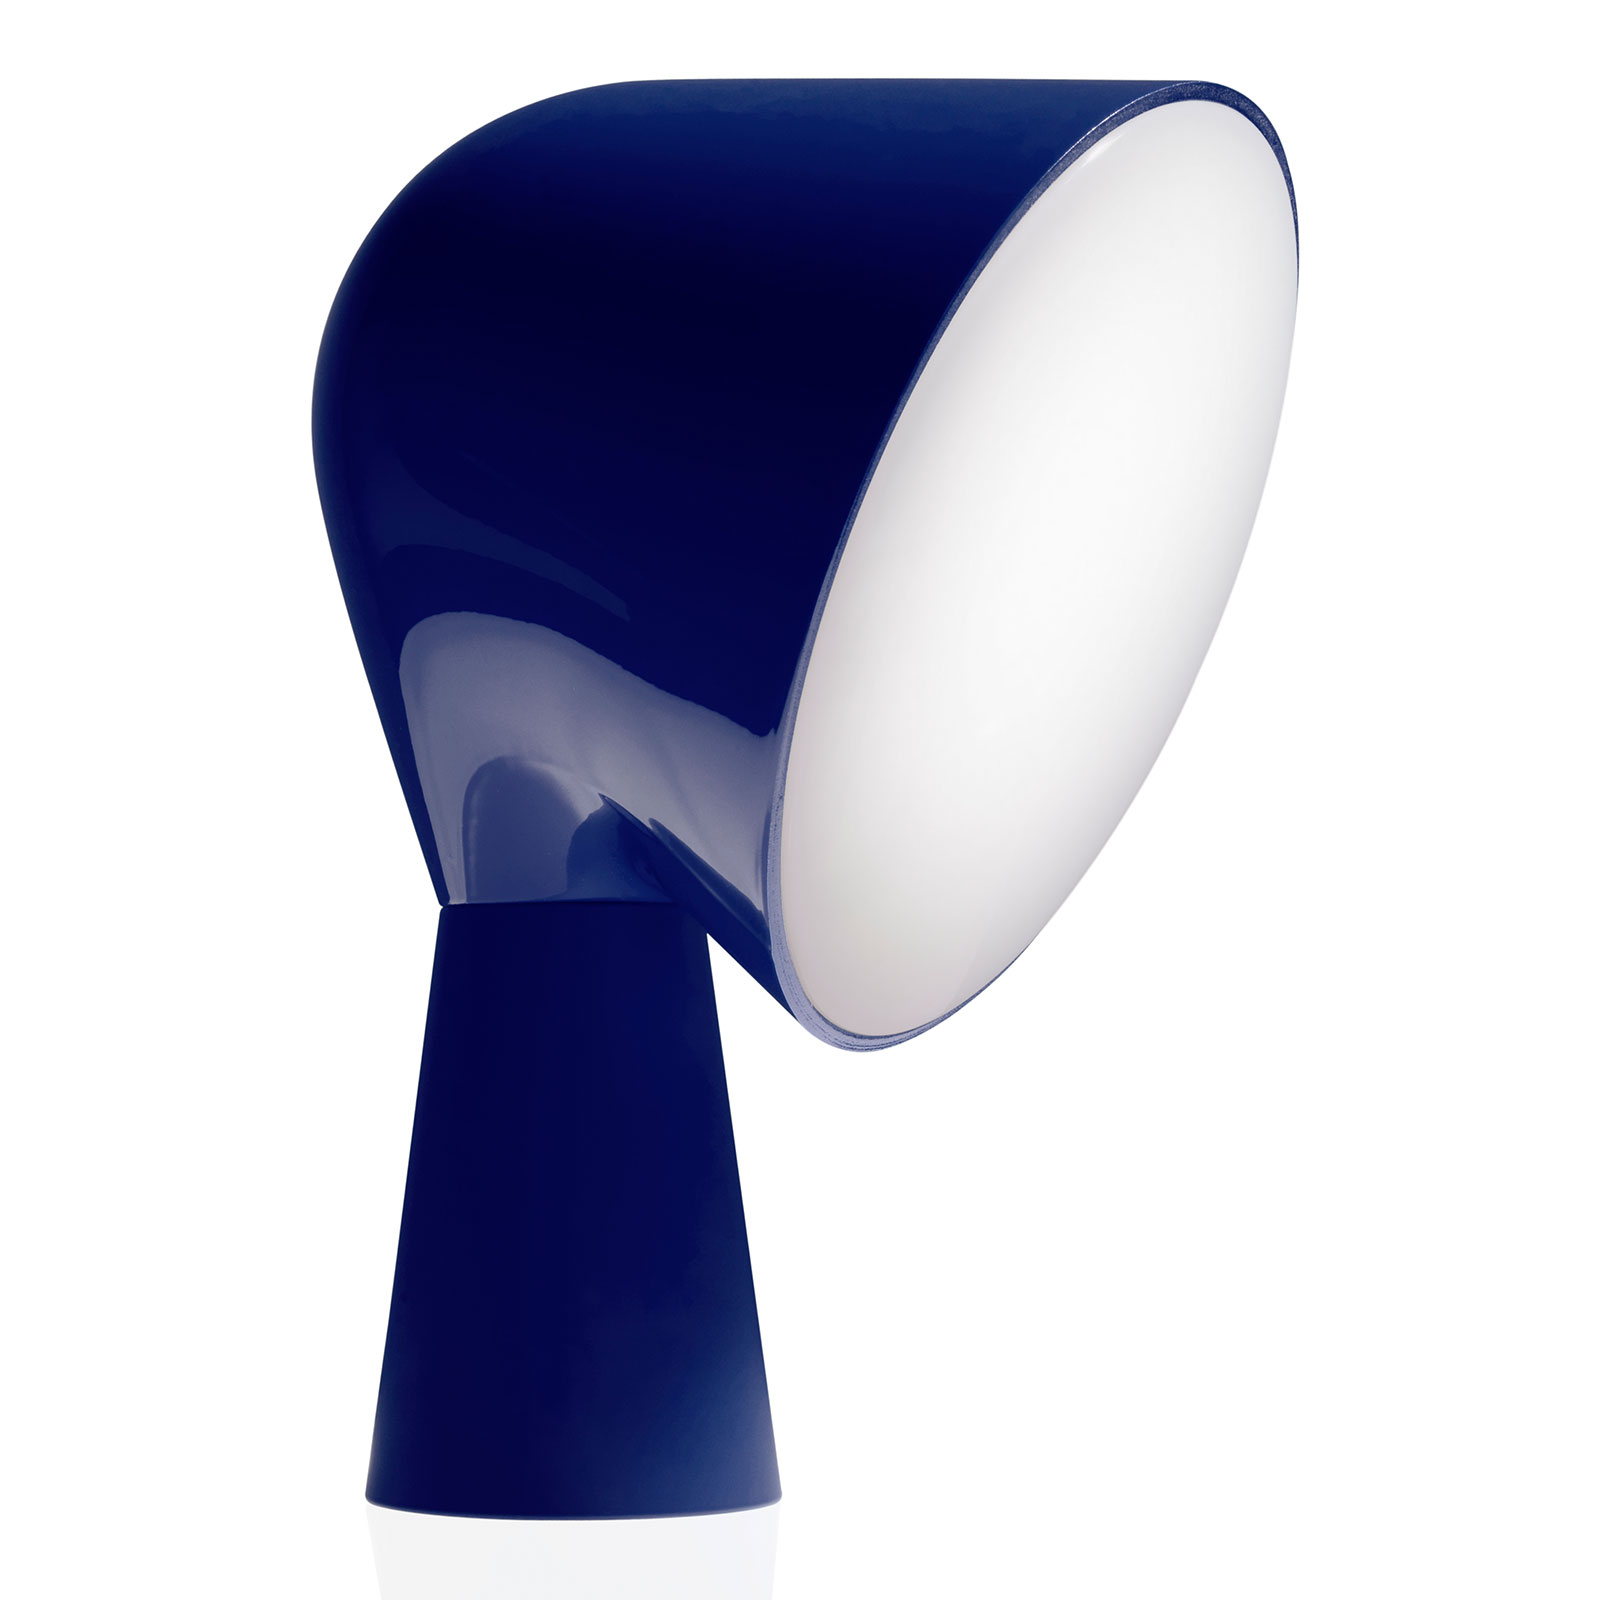 Foscarini Binic designer table lamp, blue